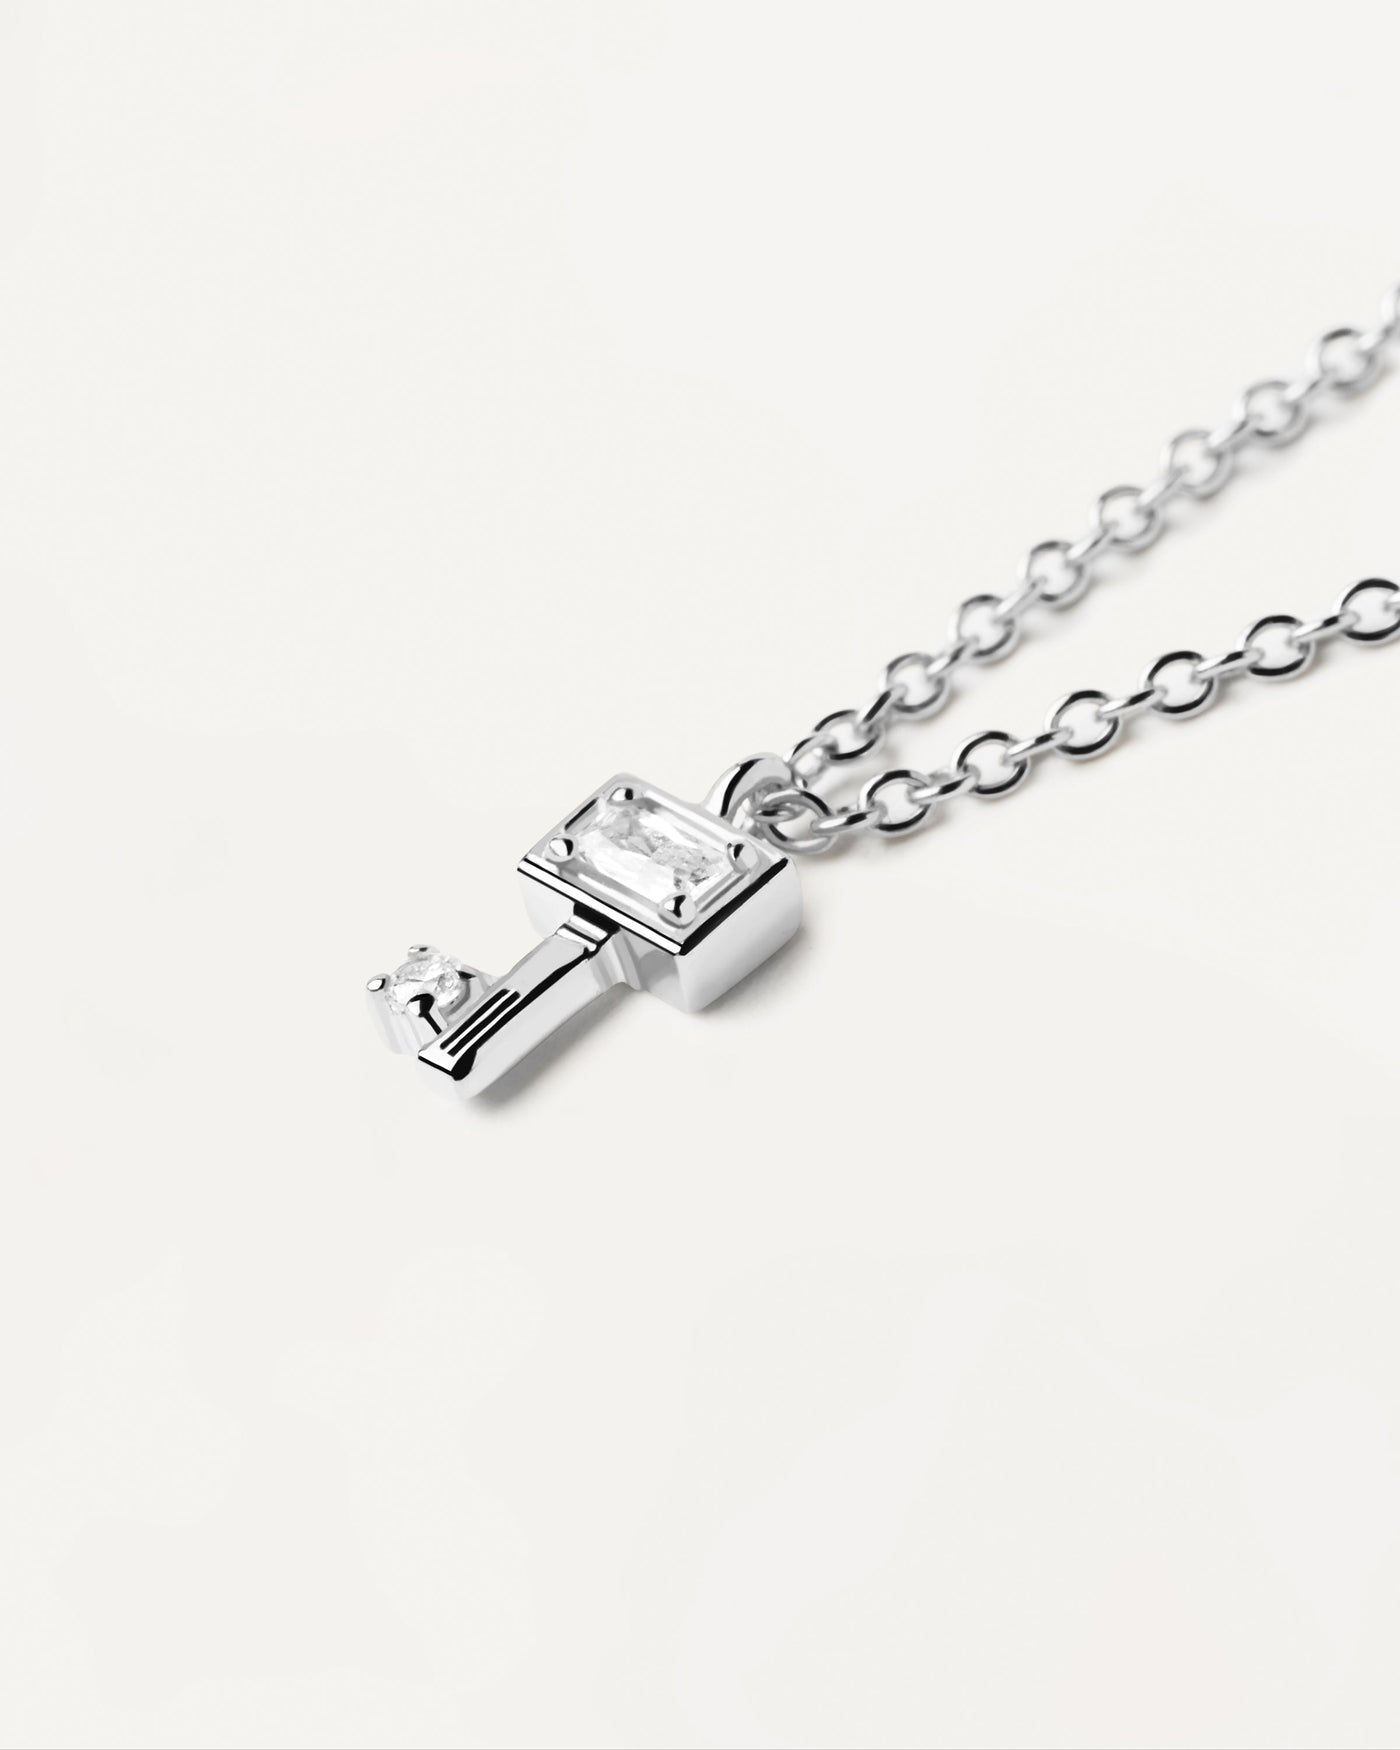 Schlüssel Silberhalskette. Halskette aus Sterlingsilber mit Schlüsselanhänger und weißen Zirkonia. Erhalten Sie die neuesten Produkte von PDPAOLA. Geben Sie Ihre Bestellung sicher auf und erhalten Sie diesen Bestseller.